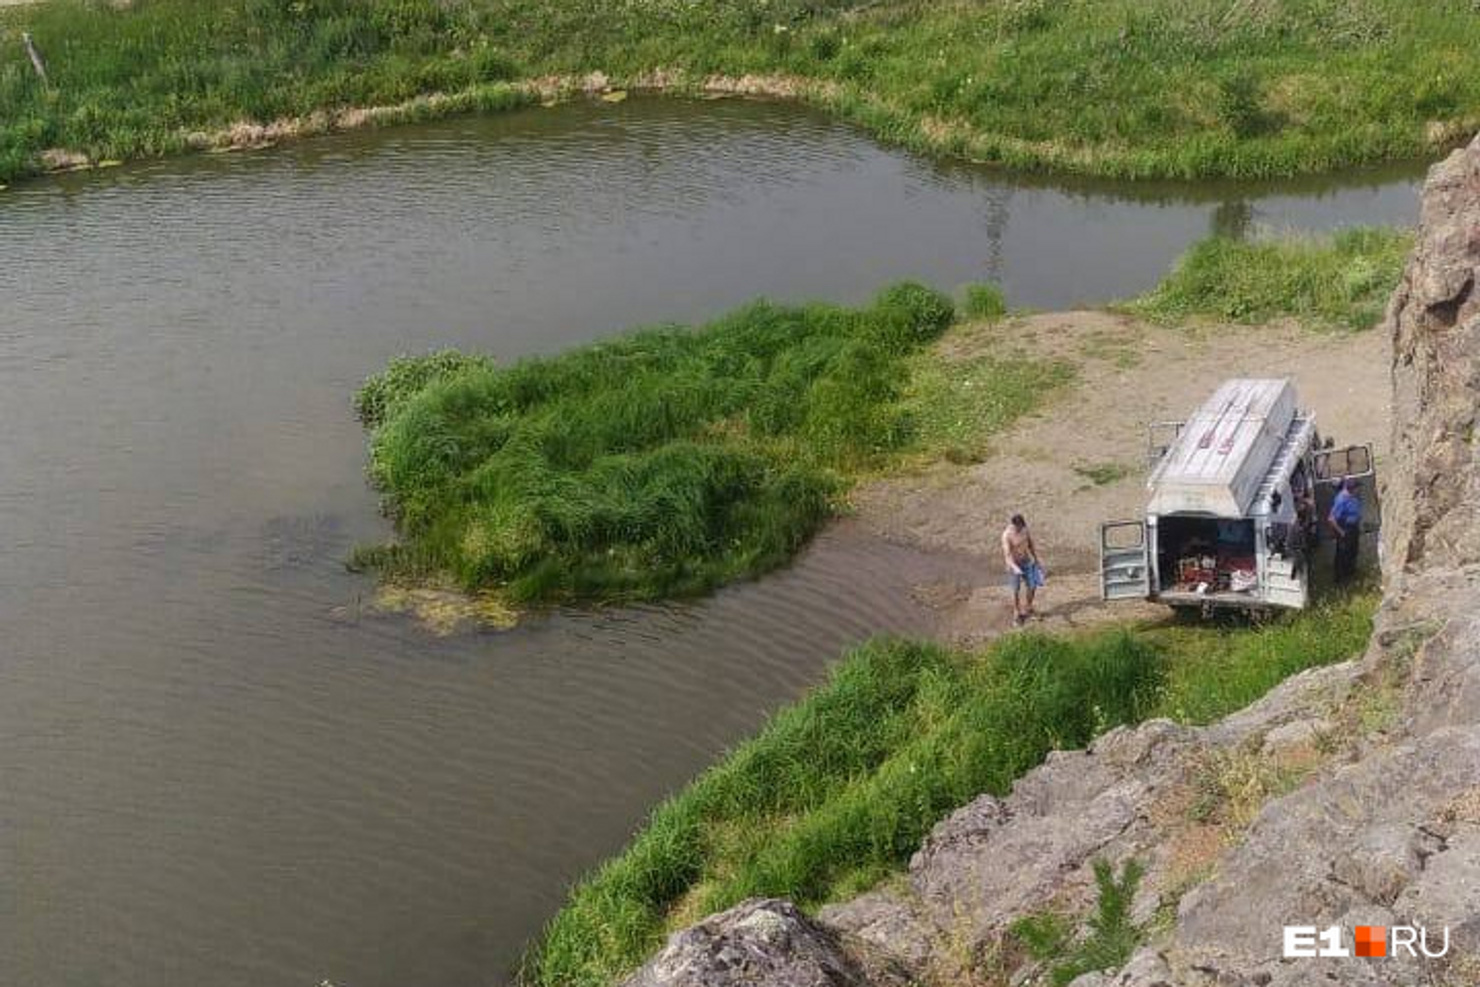 В Свердловской области нашли подростка, который пропал во время купания. Он утонул